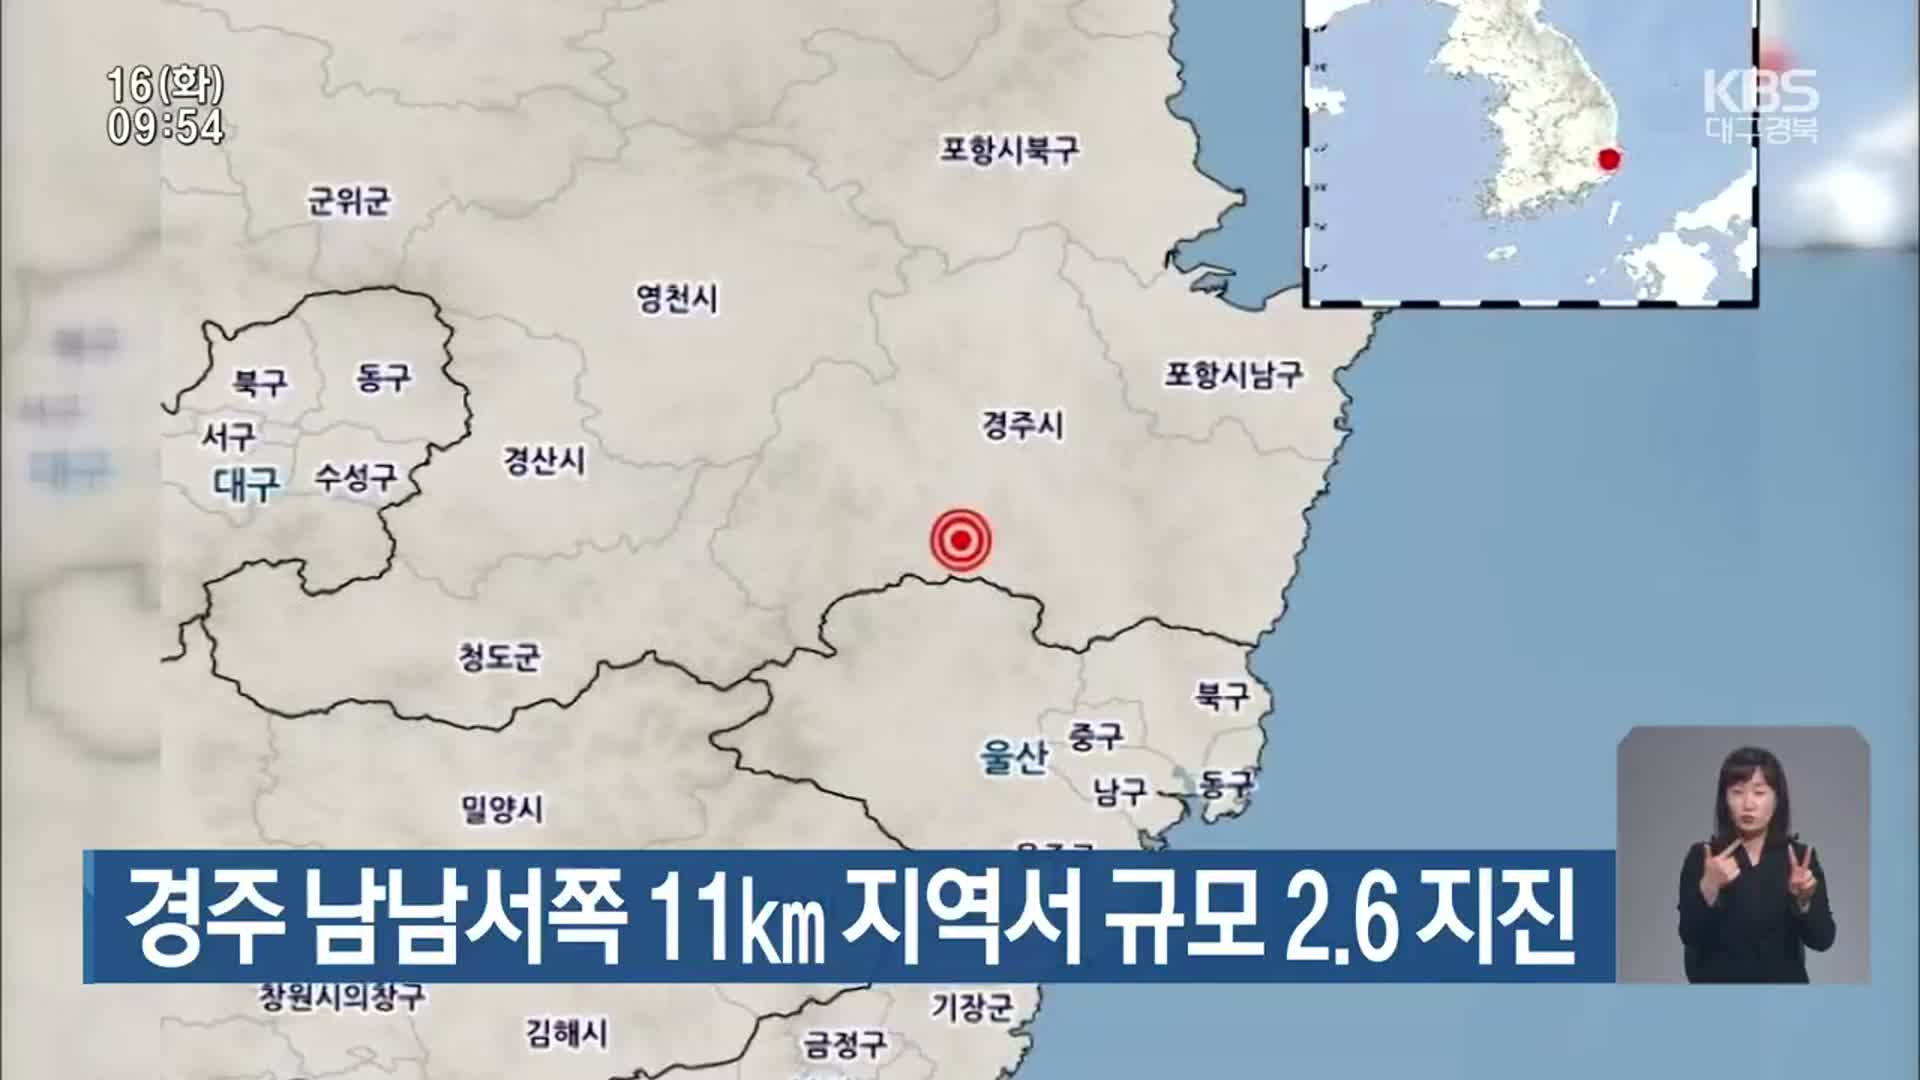 경주 남남서쪽 11km 지역서 규모 2.6 지진